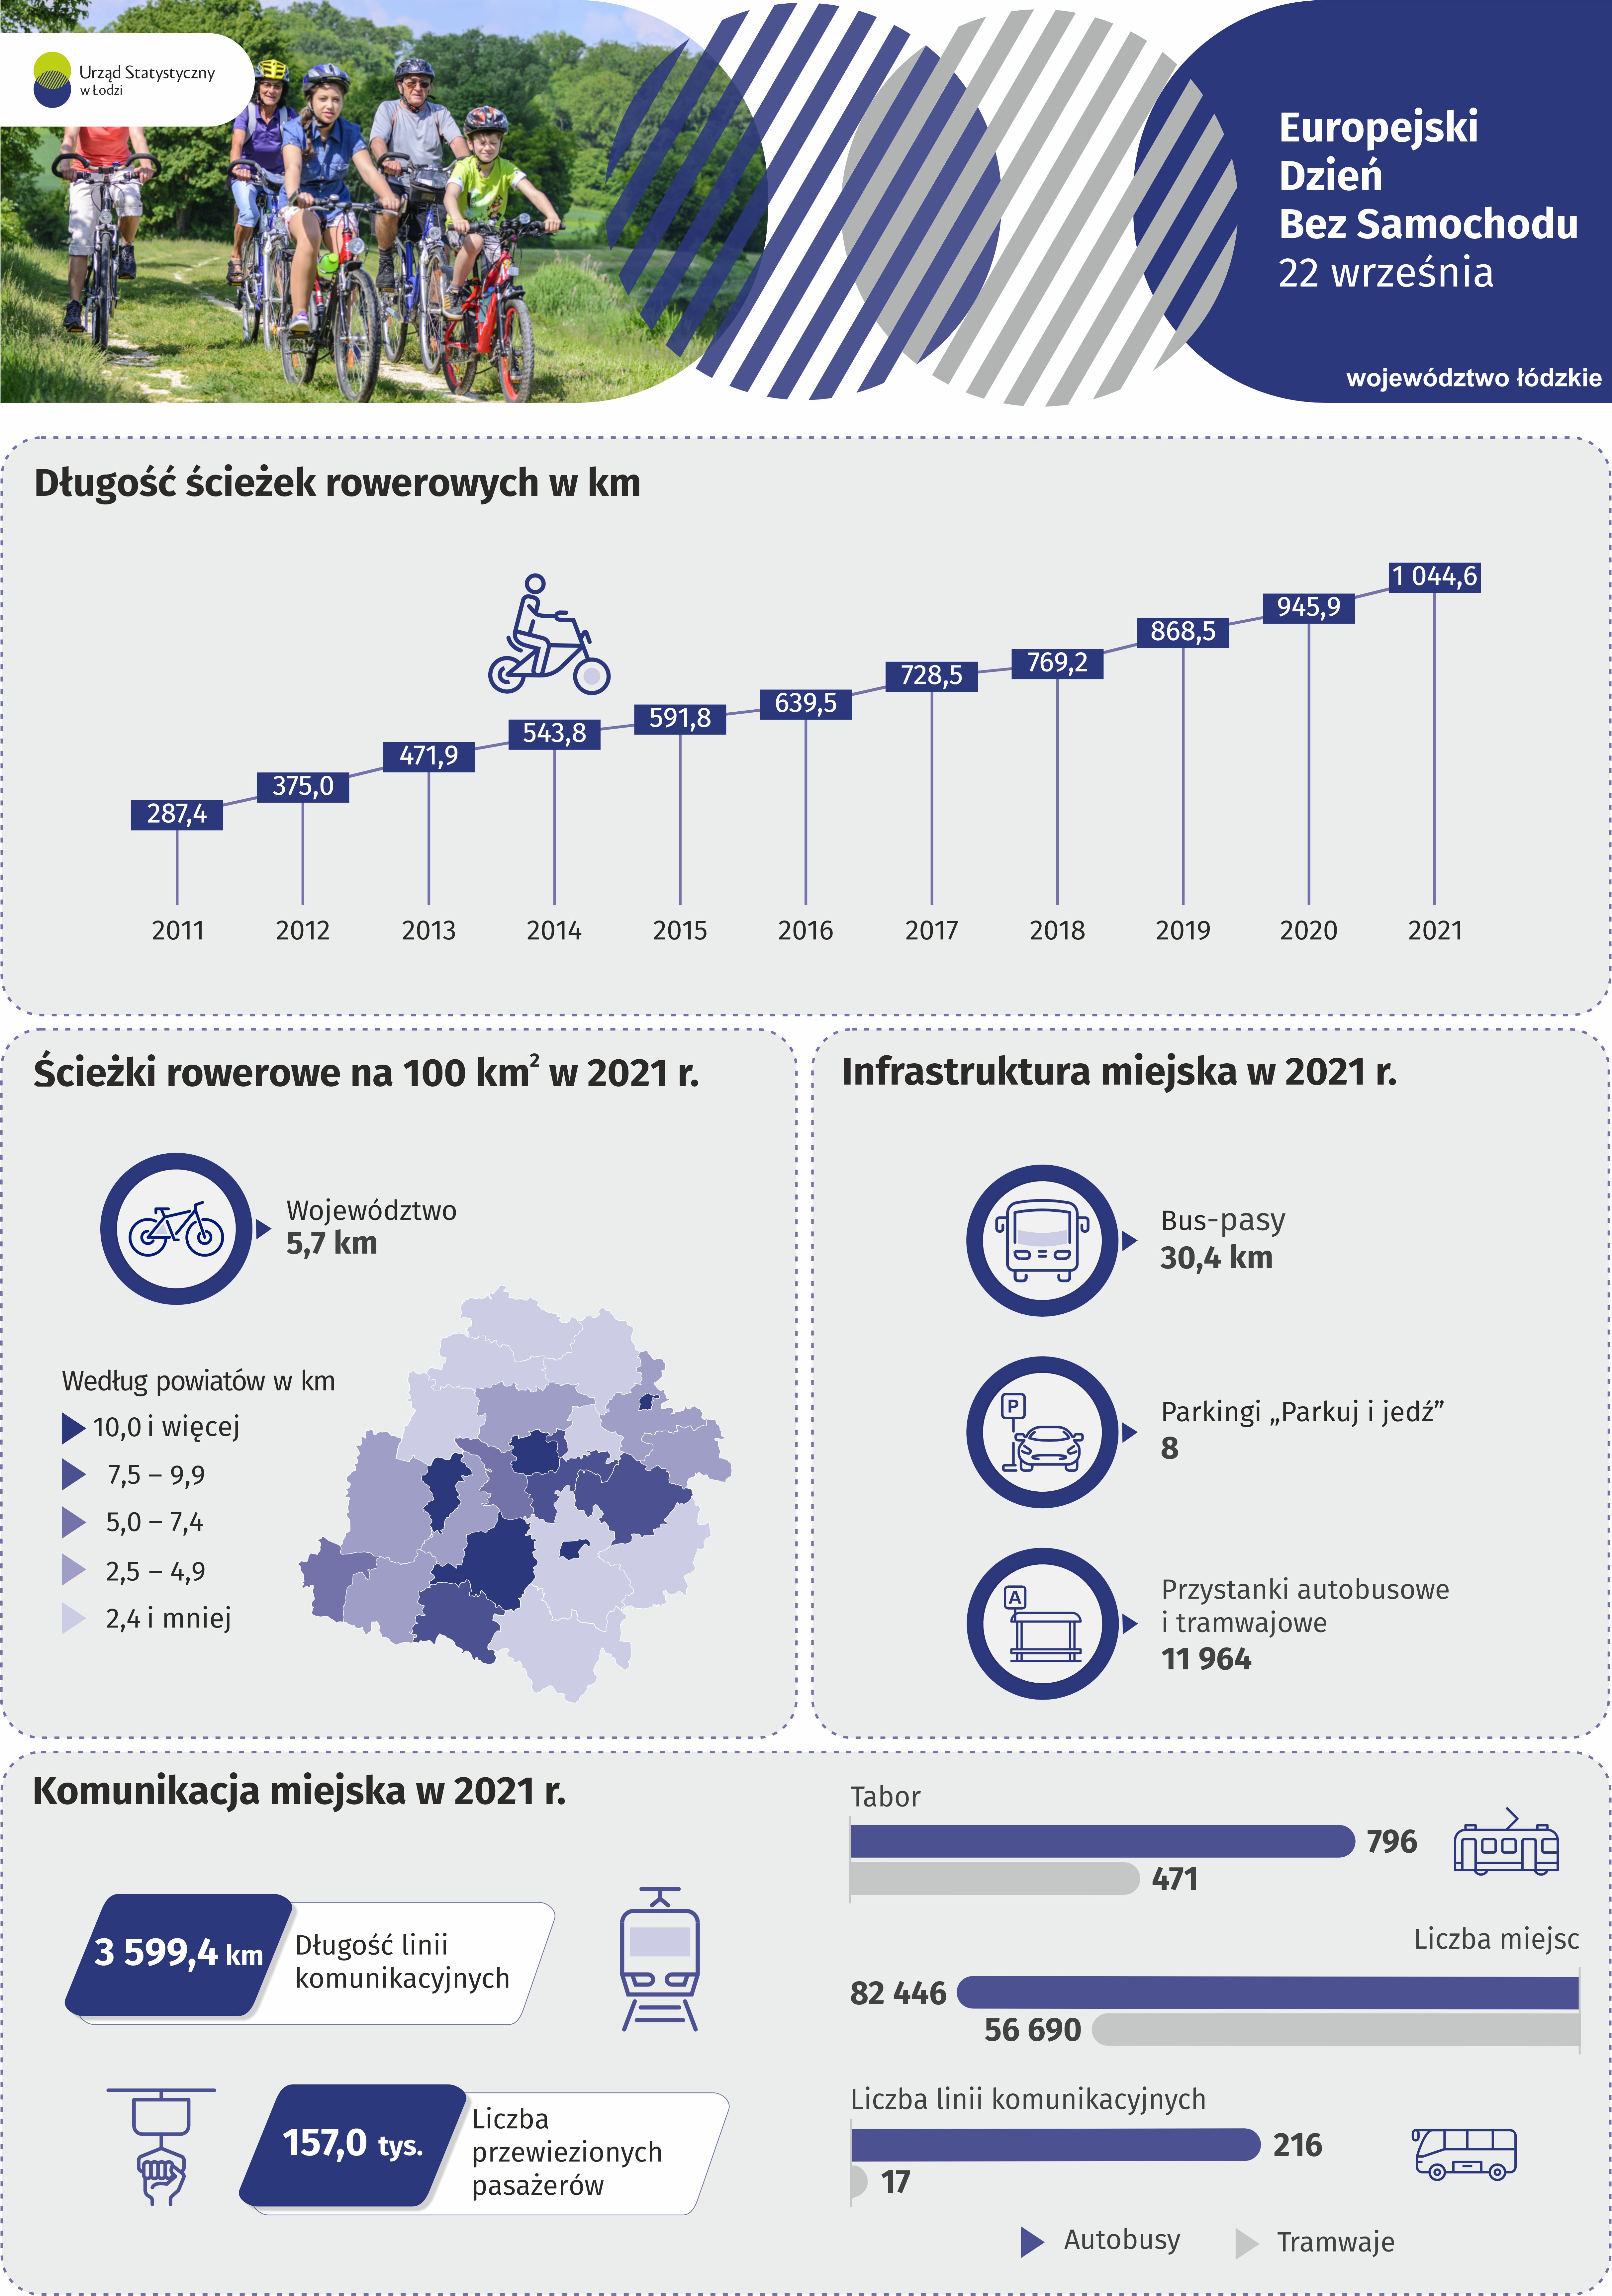 Infografika na Europejski Dzień Bez Samochodu przedstawiająca dane za 2021 r. odnośnie ścieżek rowerowych, infrastruktury miejskiej oraz komunikacji miejskiej w województwie łódzkim